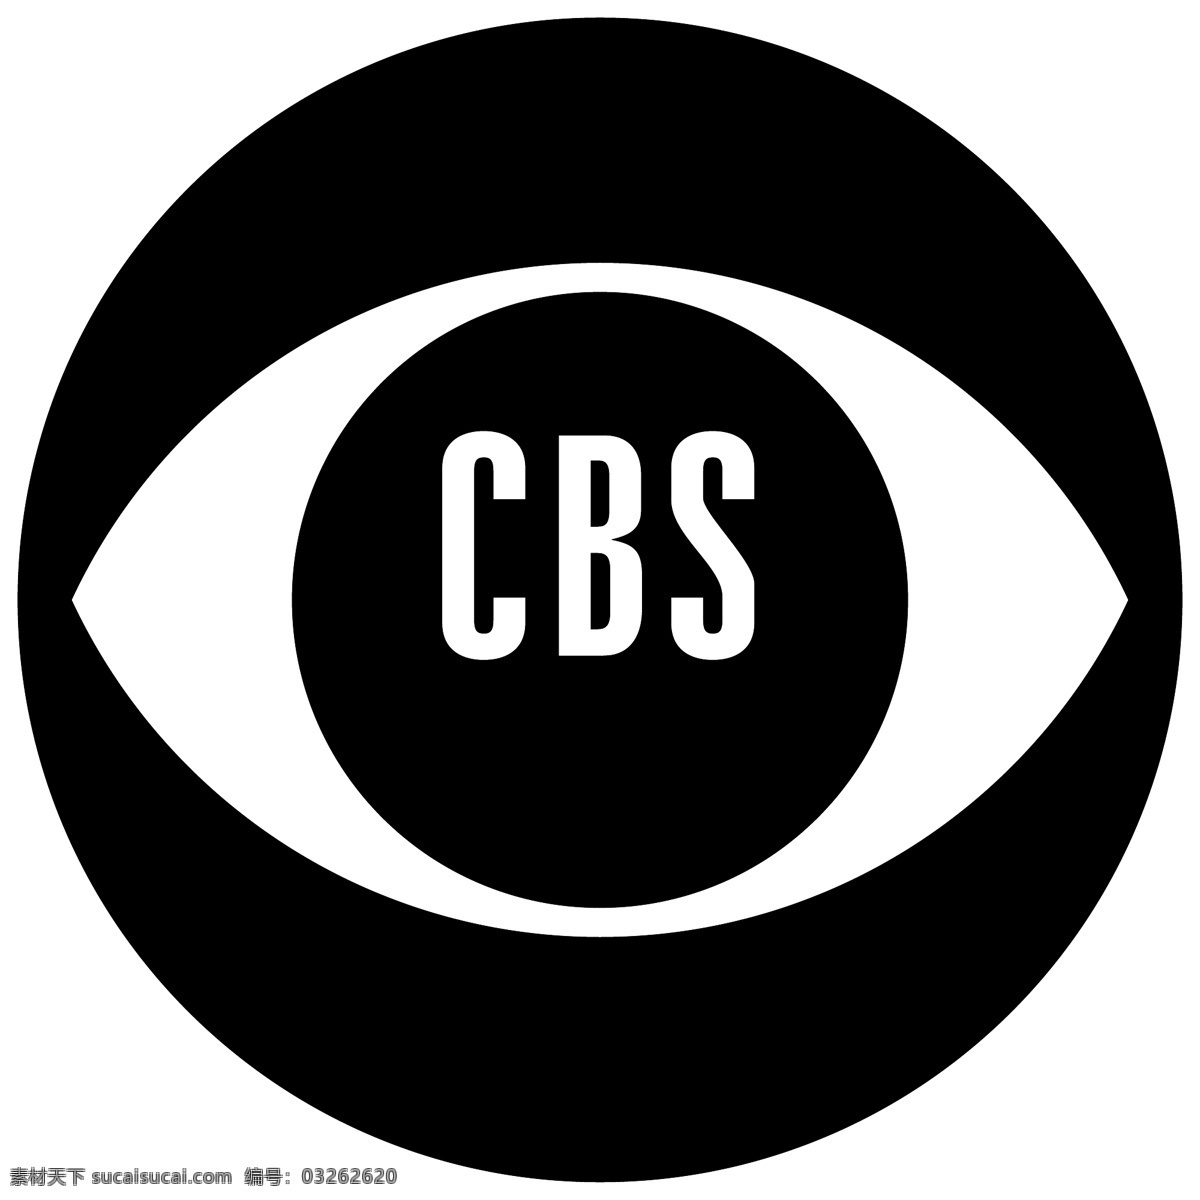 哥伦比亚 广播 公司 cbs cbs标识 标识为免费 黑色